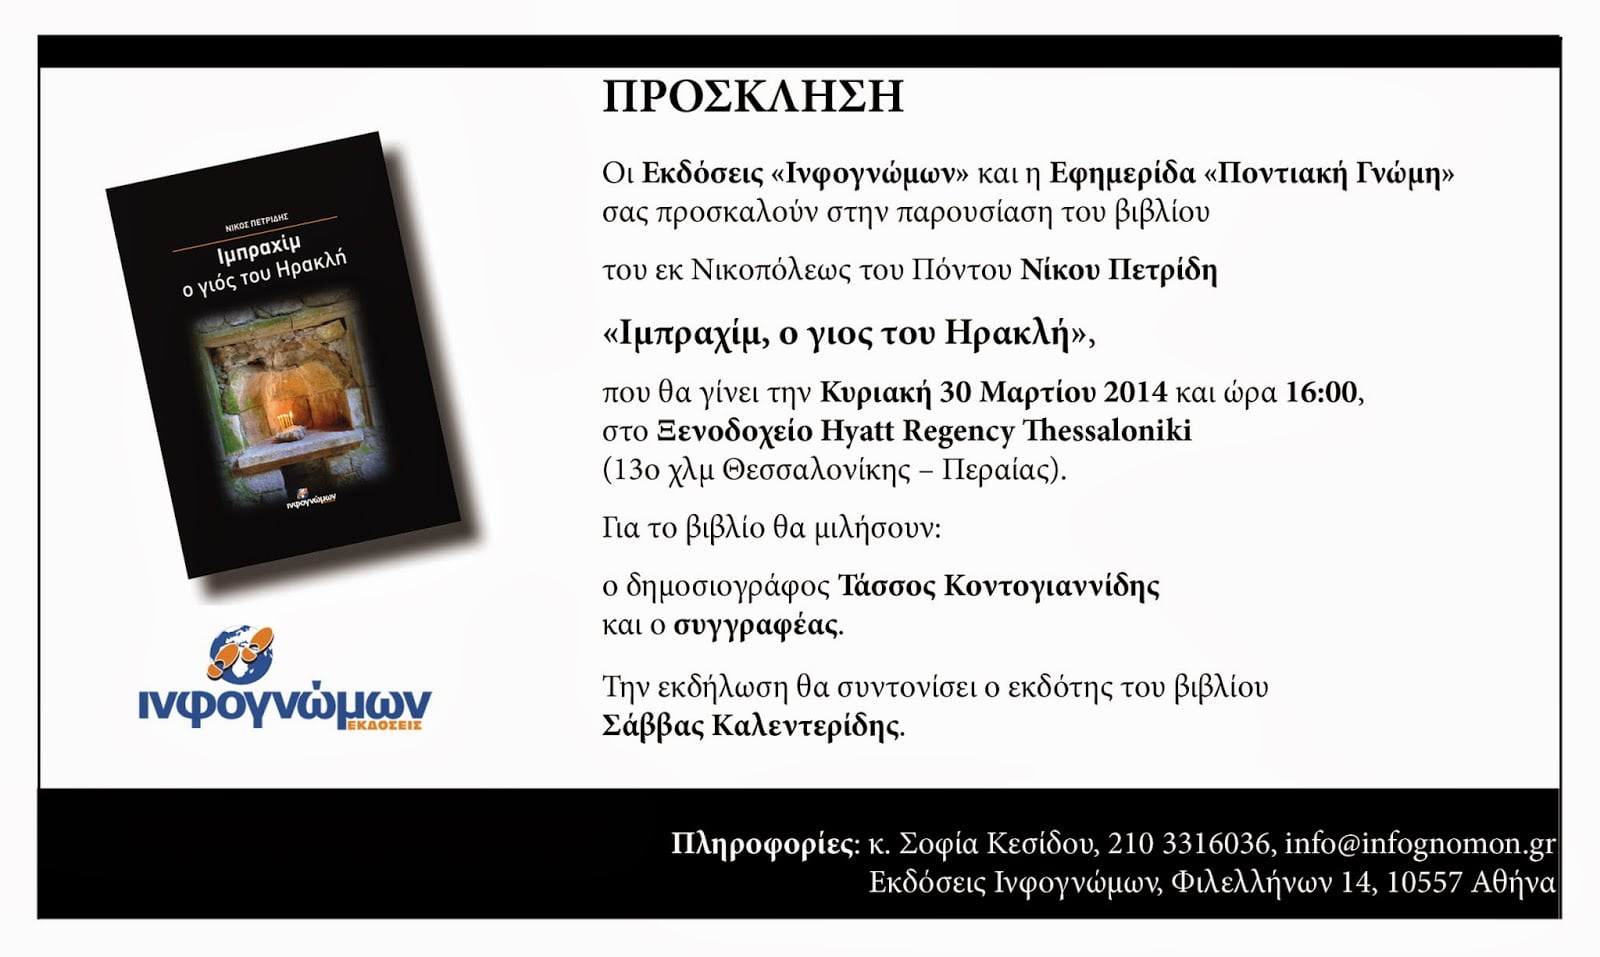 Πρόσκληση στην παρουσίαση του βιβλίου του Νίκου Πετρίδη “Ιμπραχίμ, ο γιος του Ηρακλή” την Κυριακή 30 Μαρτίου